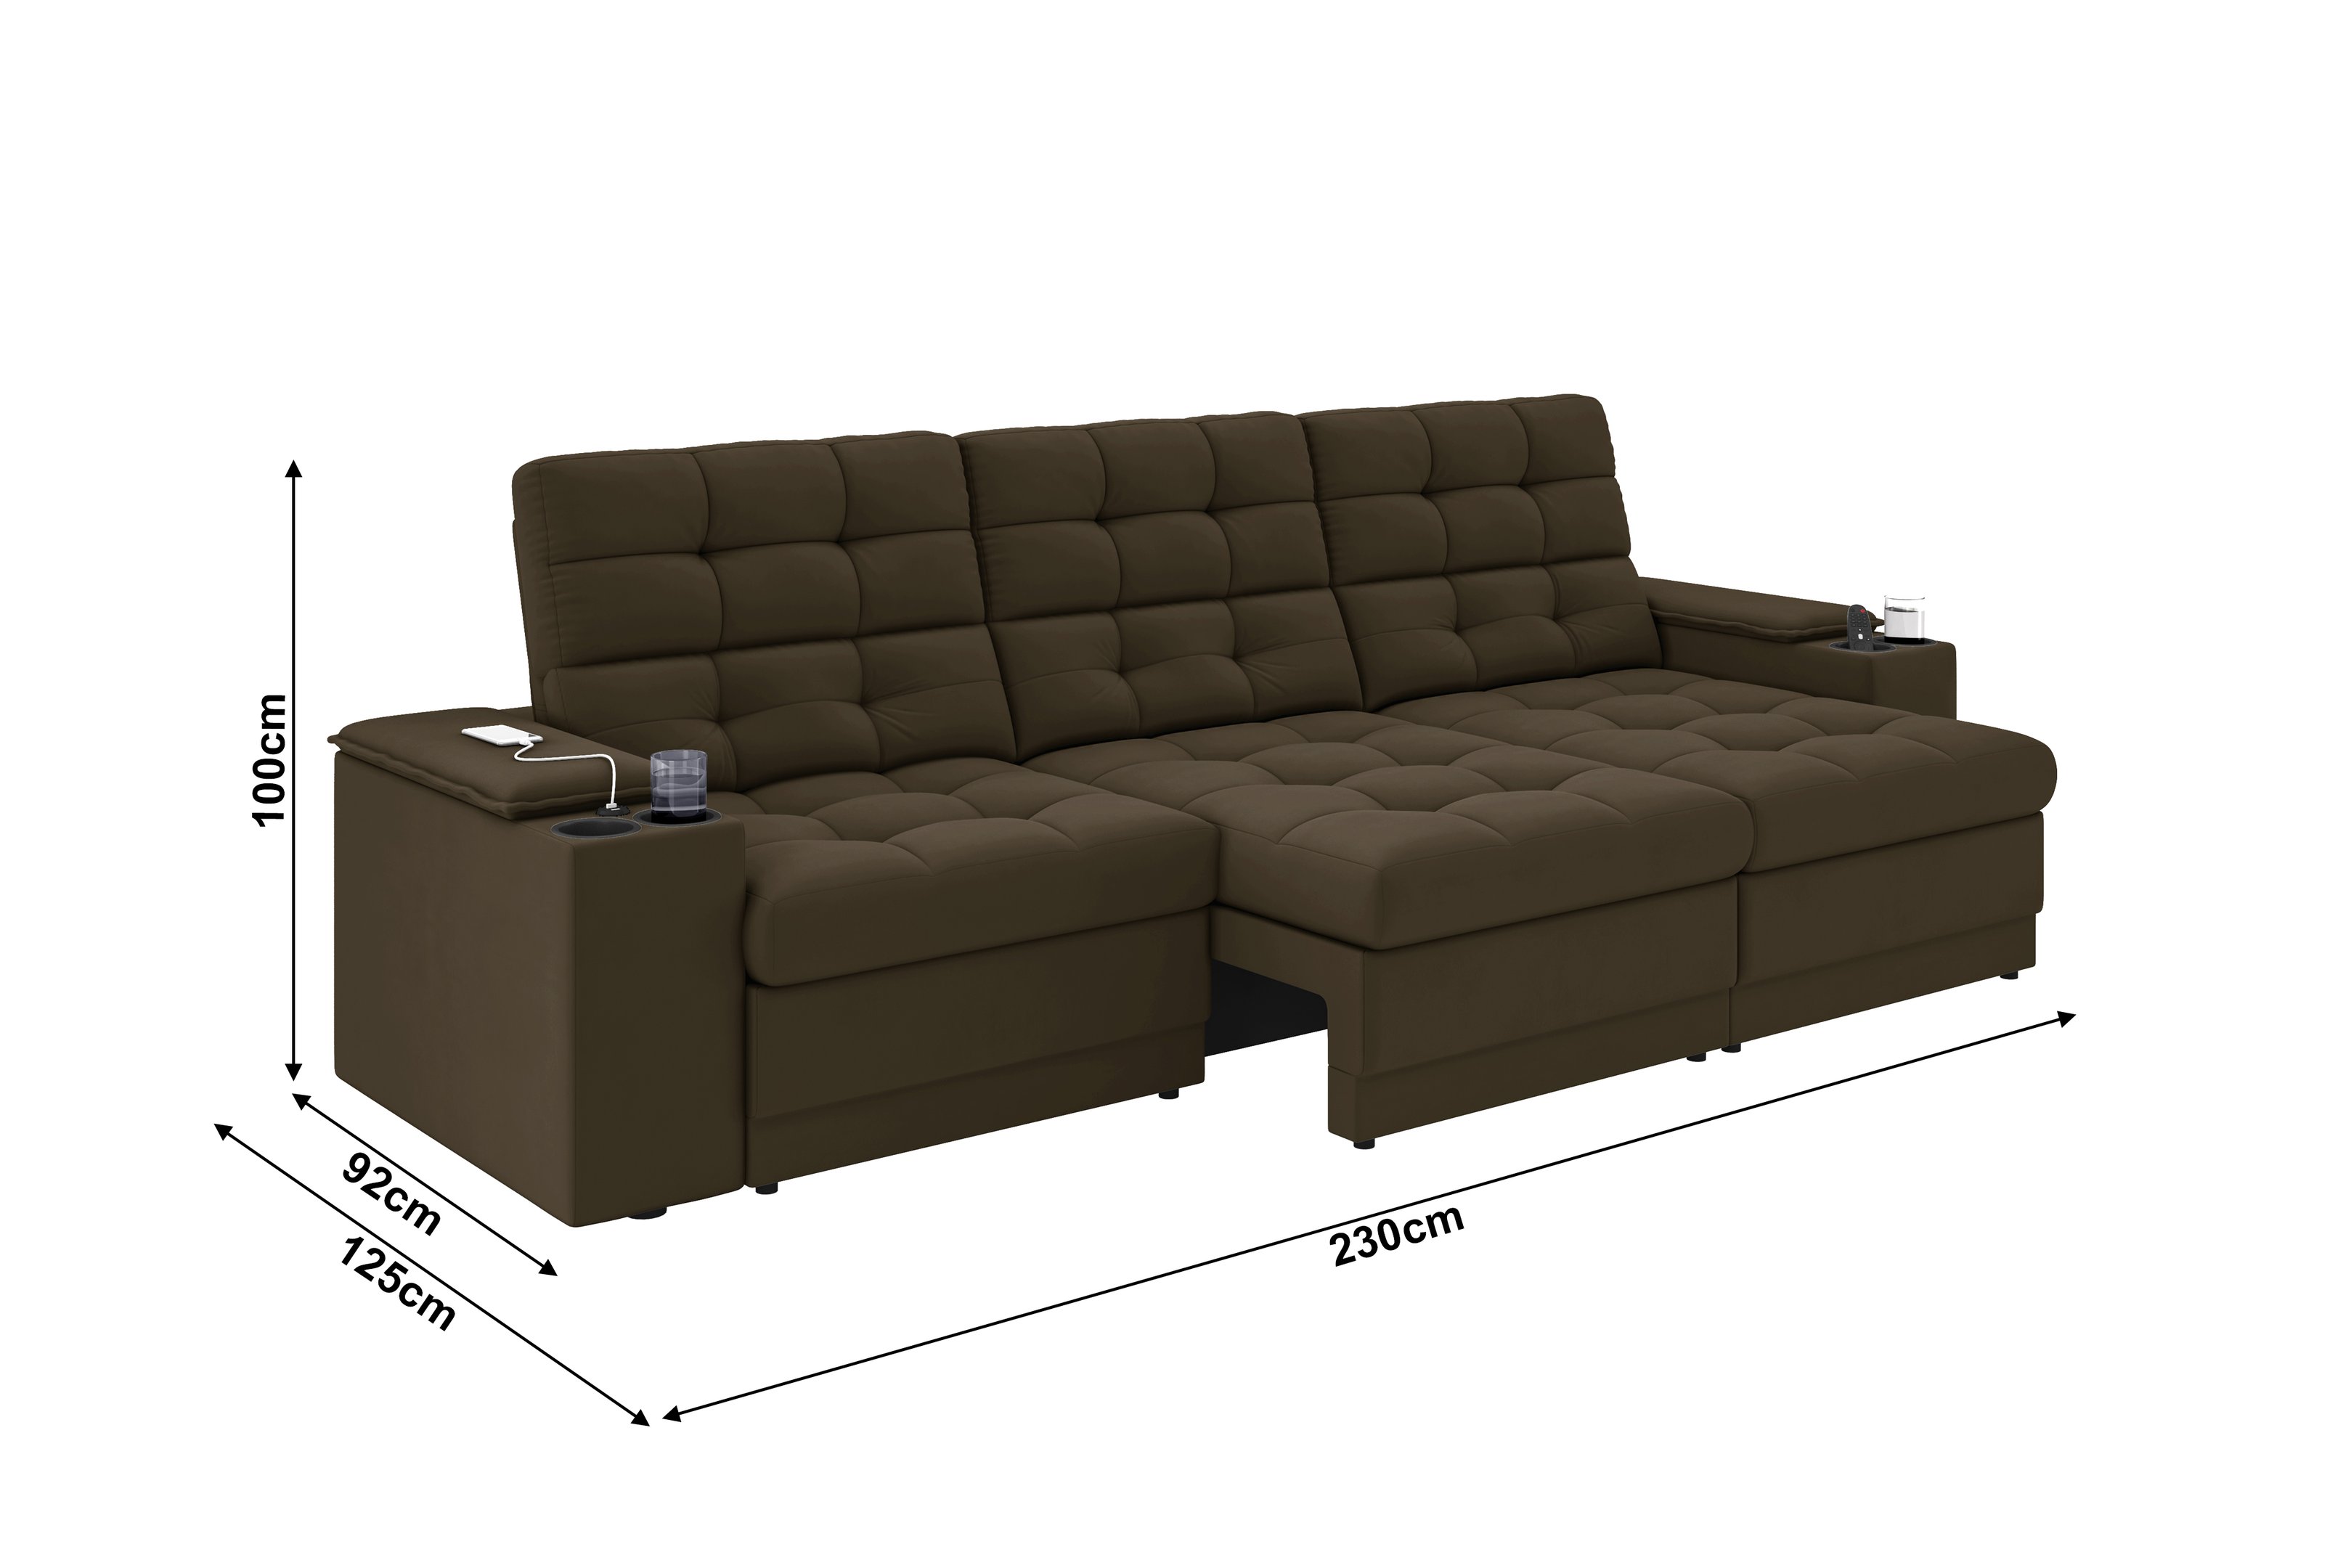 Sofá Confort Premium 2,30m Assento Retrátil/reclinável Porta Copos e Usb Suede Marrom - Xflex - 2